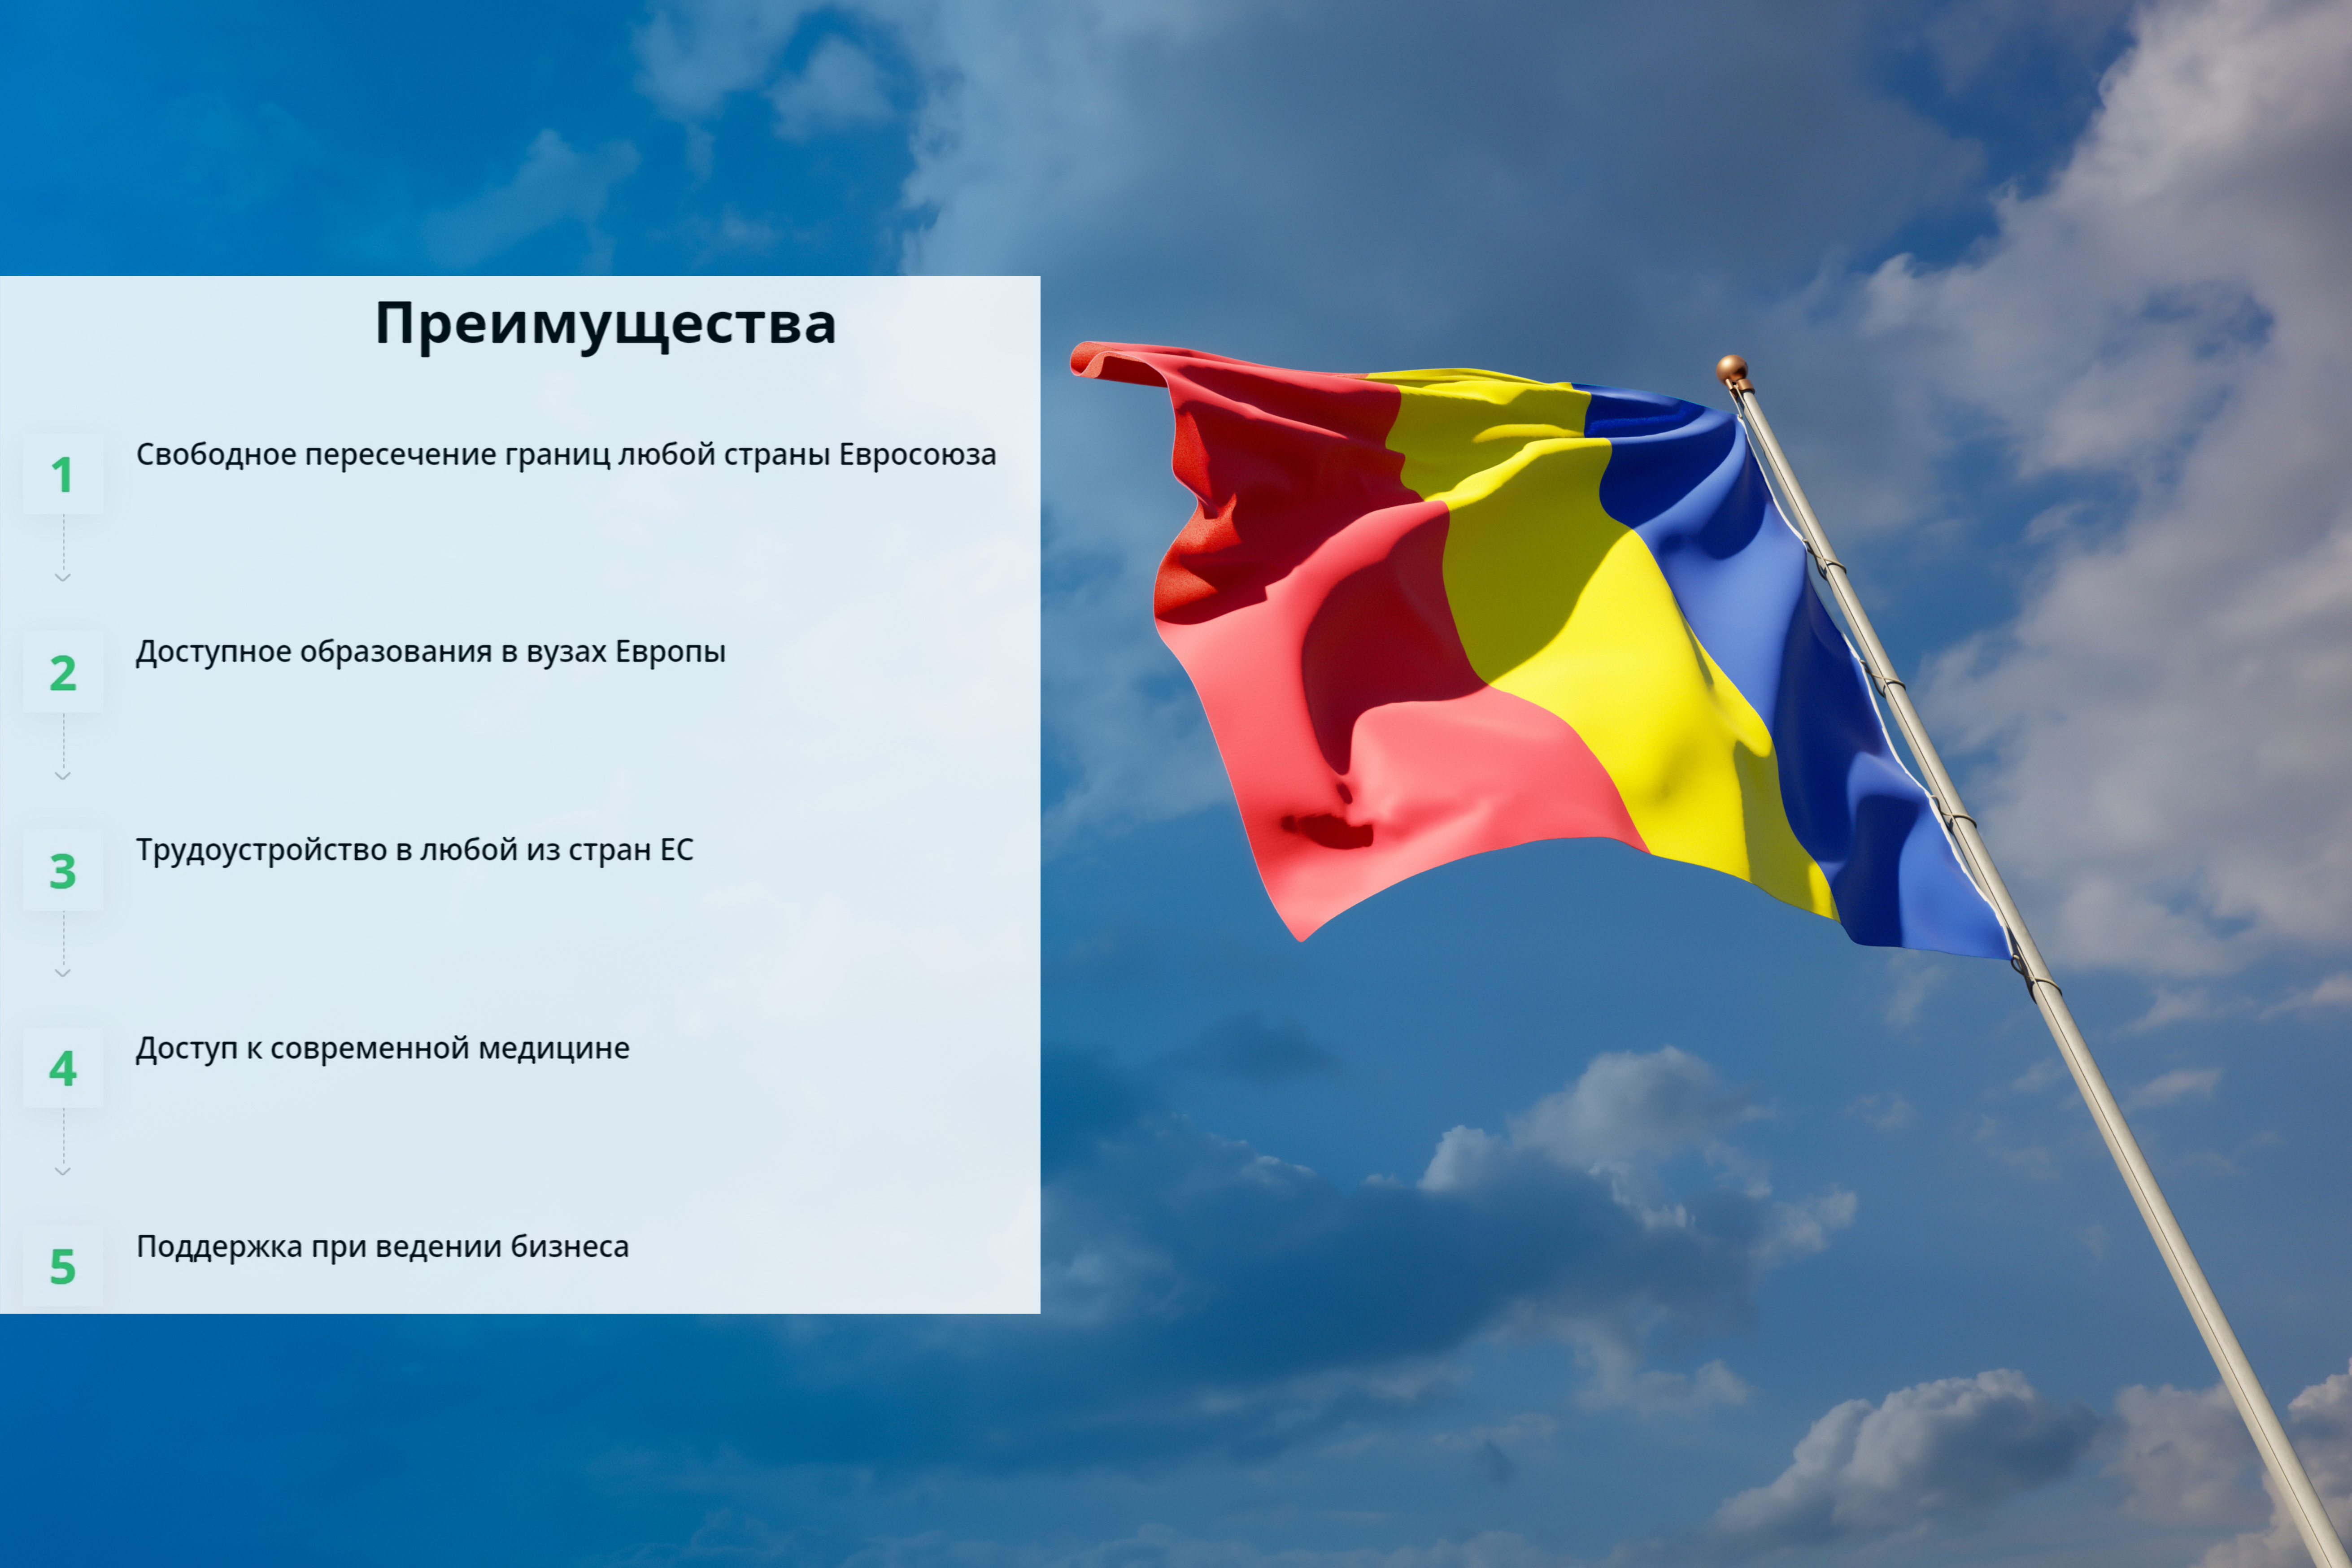 Преимущества ЕС для граждан Румынии